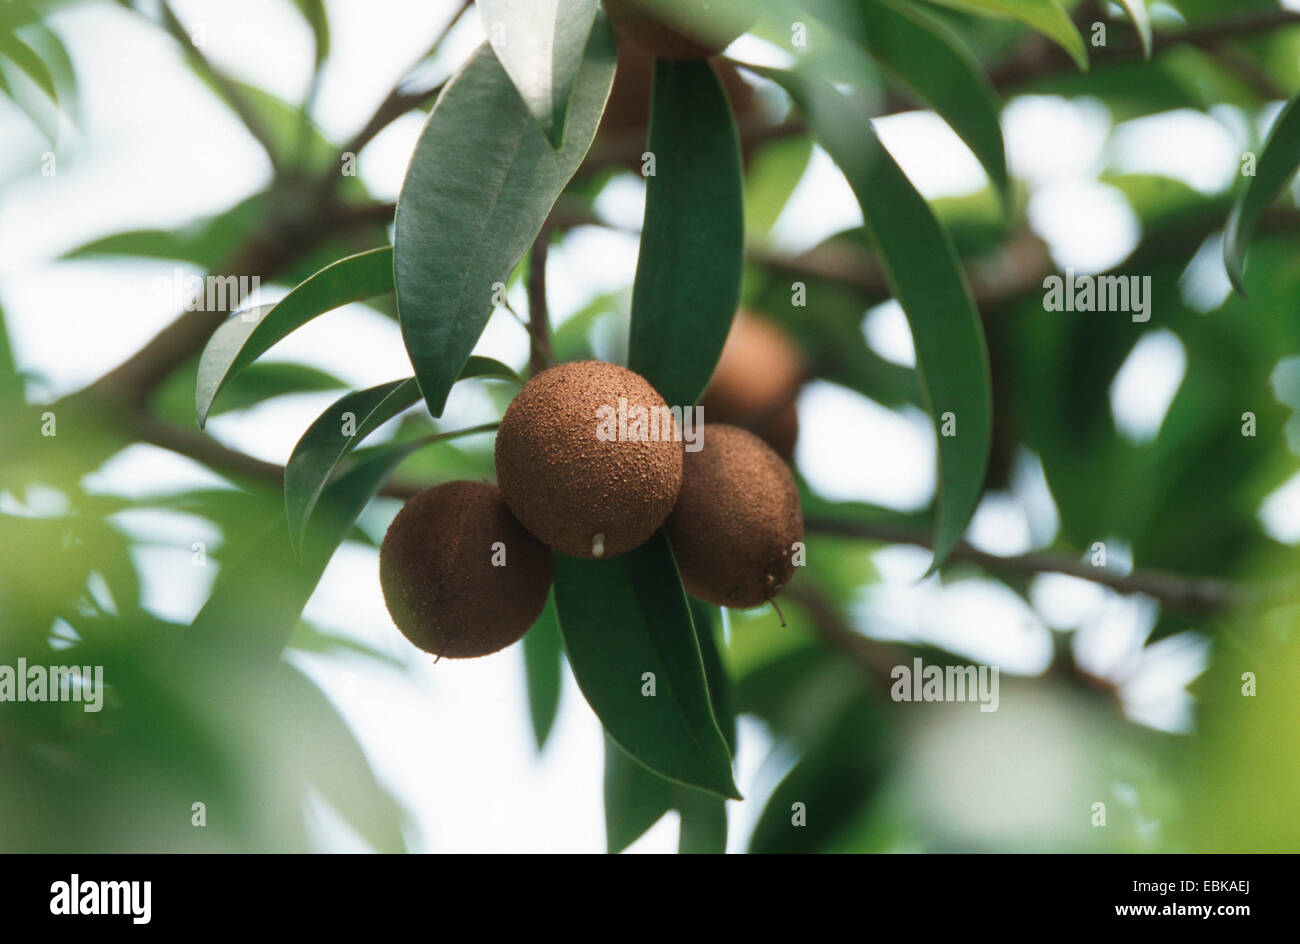 Marmelade Plum (Manilkara zapota, Achras zapota), twig with fruits Stock Photo